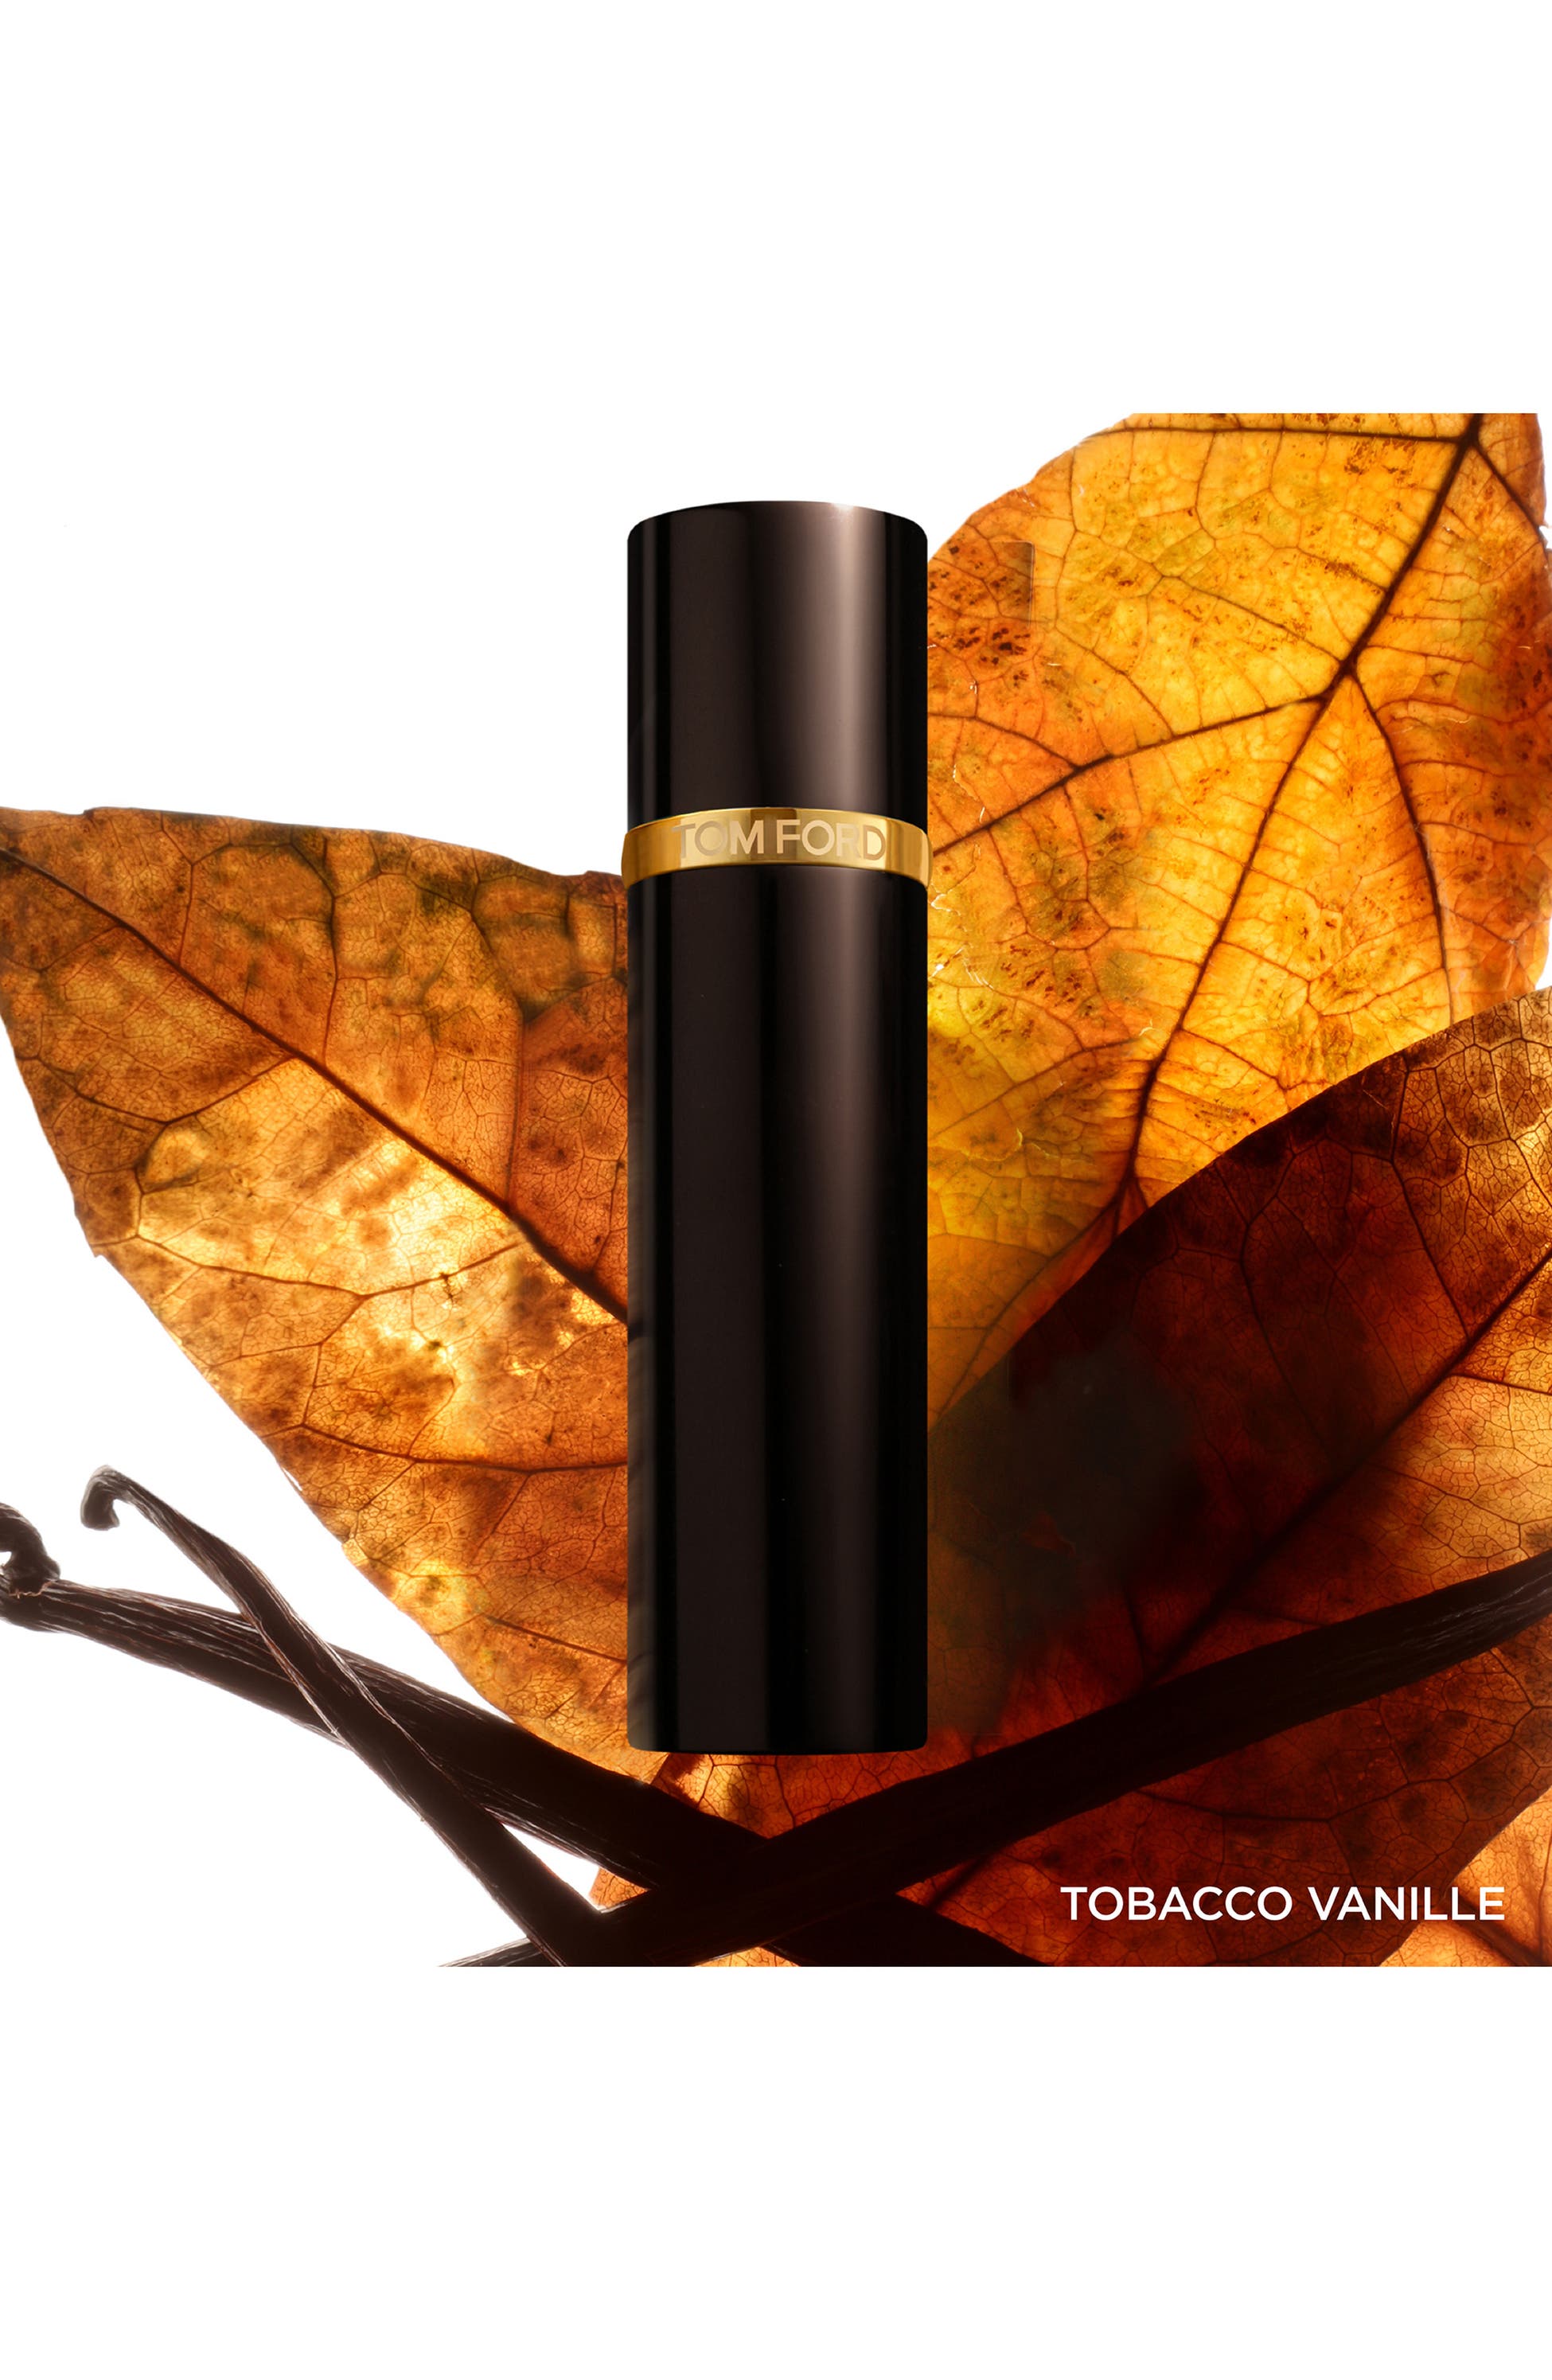 TOM FORD Private Blend Tobacco Vanille Eau de Parfum Atomizer, Alternate, color, NO COLOR